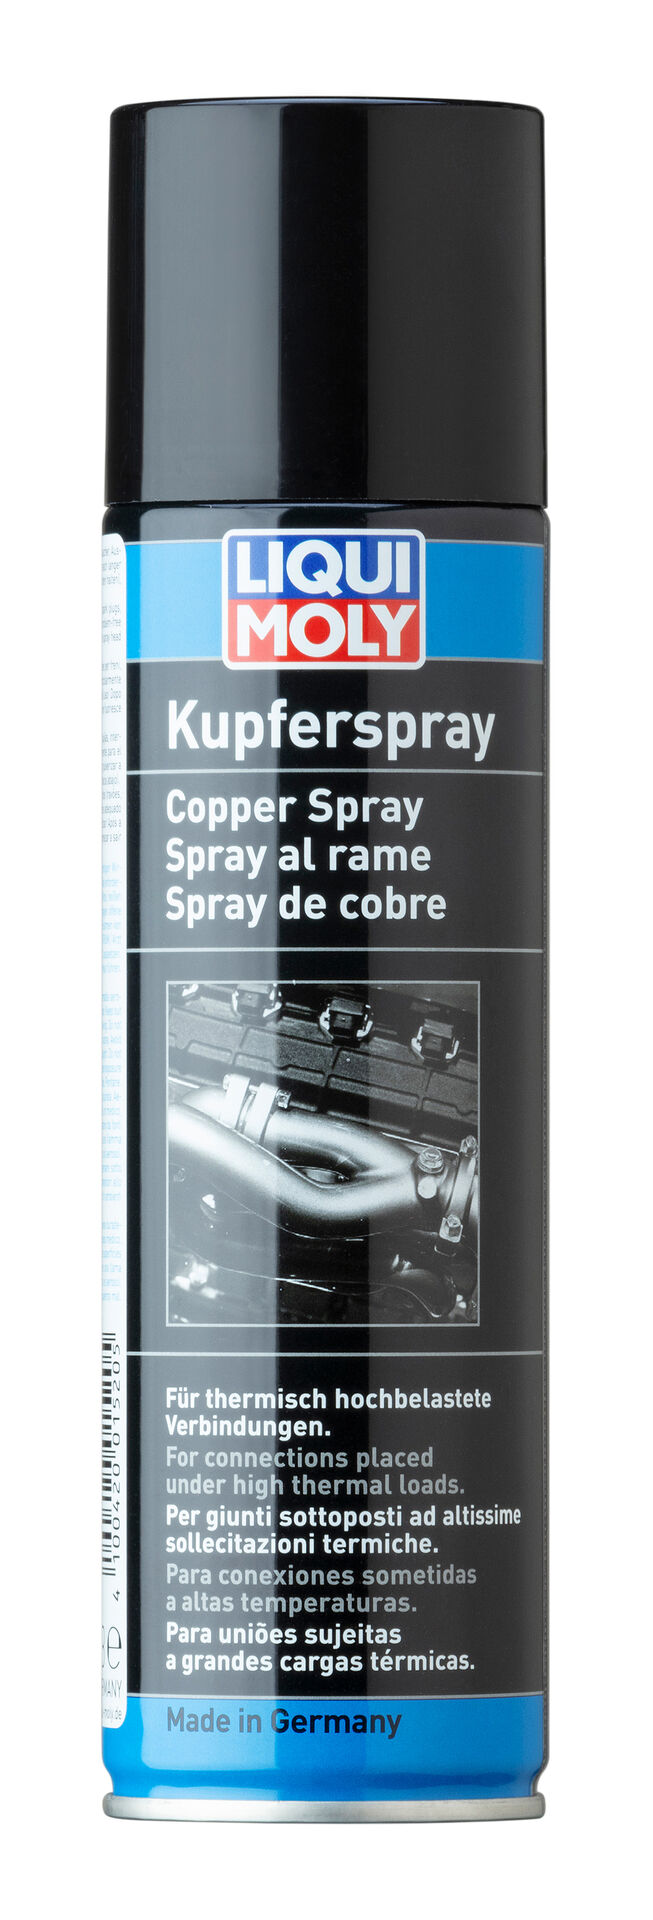 250 ml LIQUI MOLY Kupfer-Spray 1520 Dose Aerosol Schmierstoff